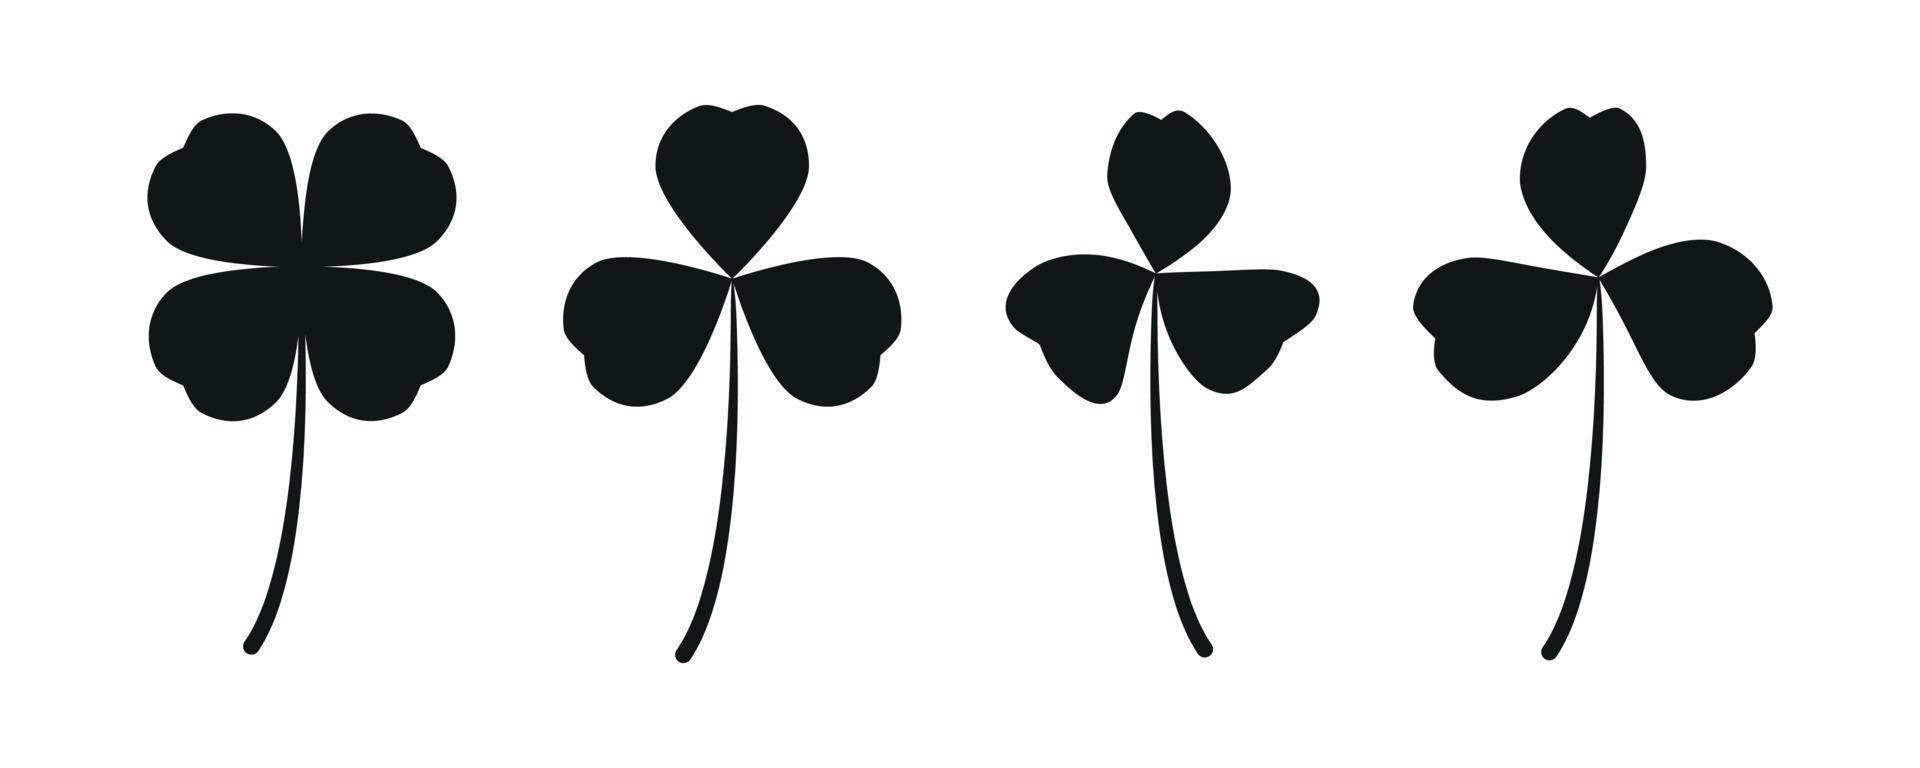 silueta negra hoja de trébol de la suerte, trébol, trébol de cuatro hojas aislado en blanco, para st. patricio vector